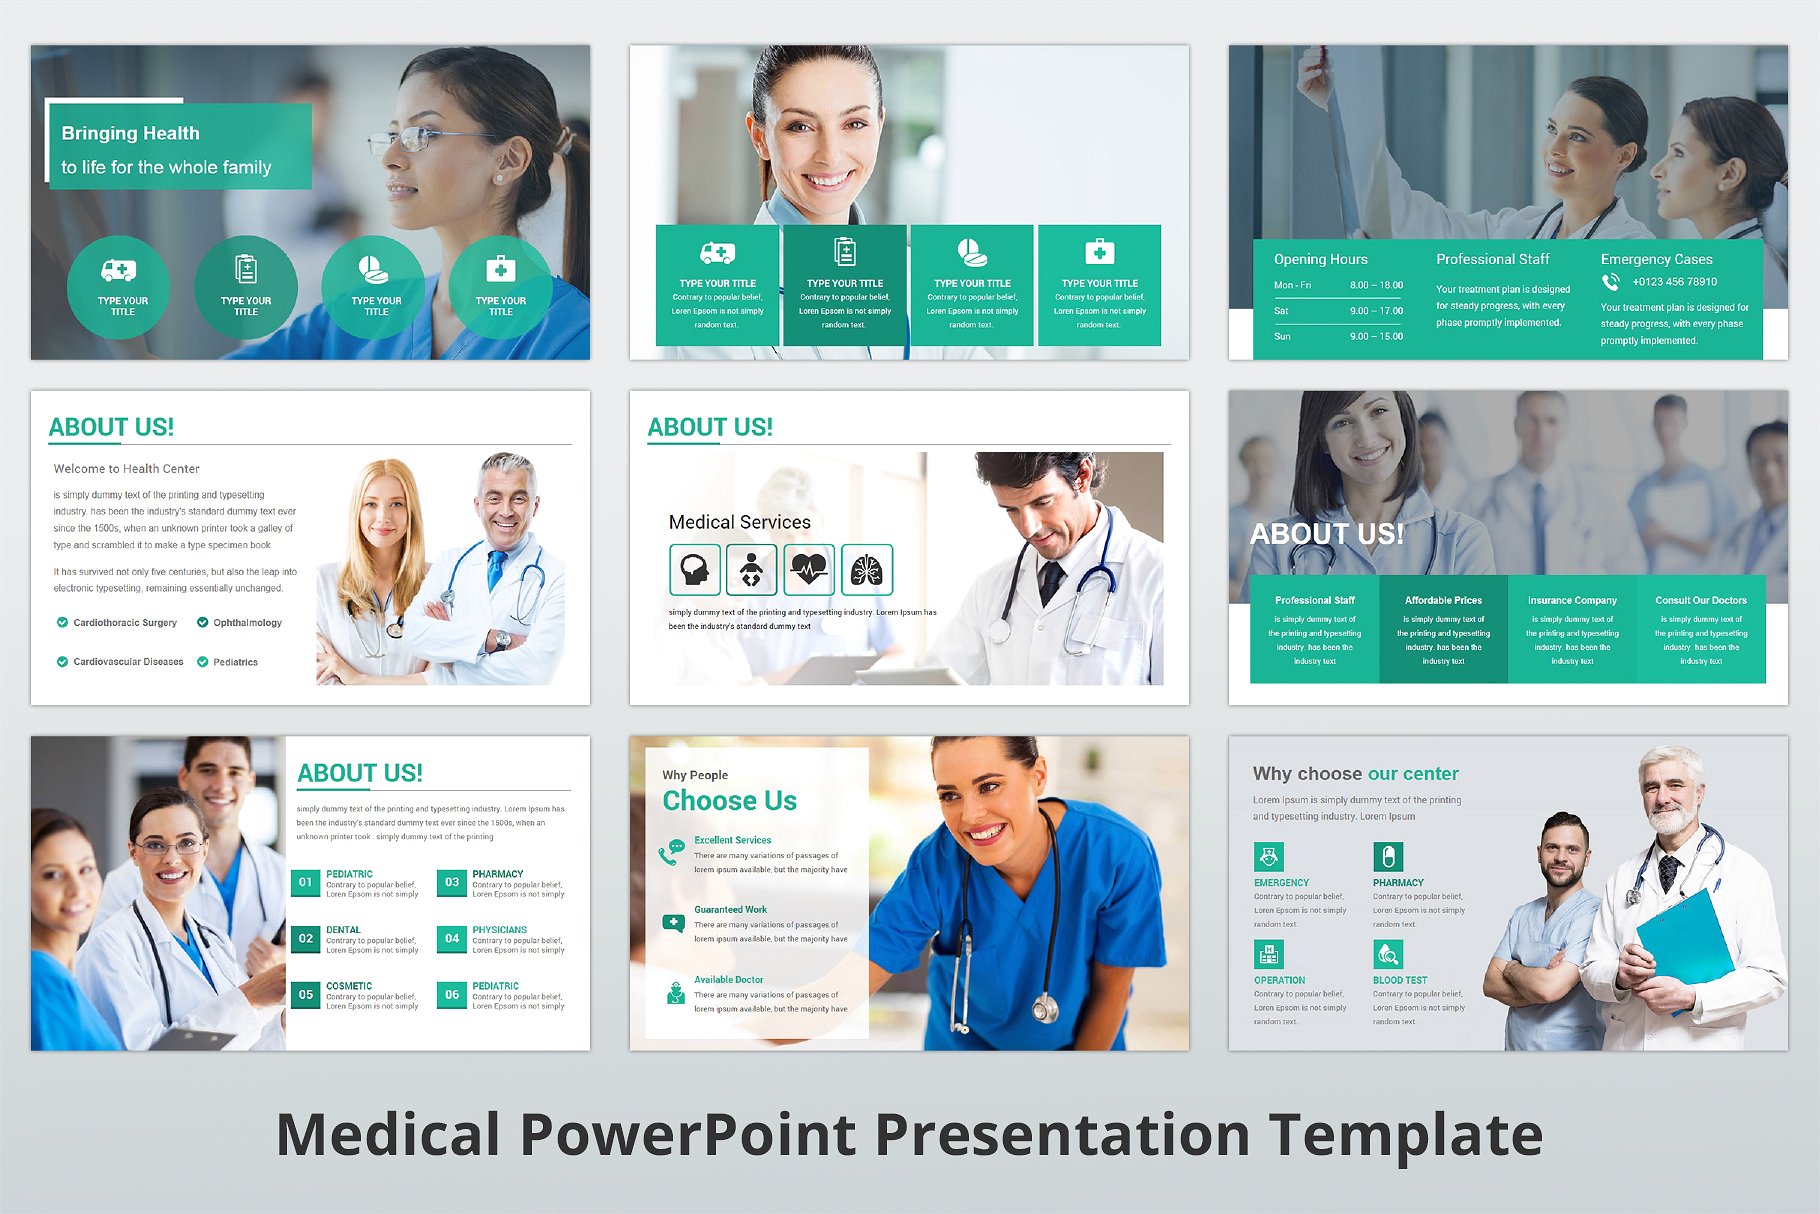 高品质医疗行业演示的PPT模板下载 Medical PowerPoint Template [pptx]插图(5)